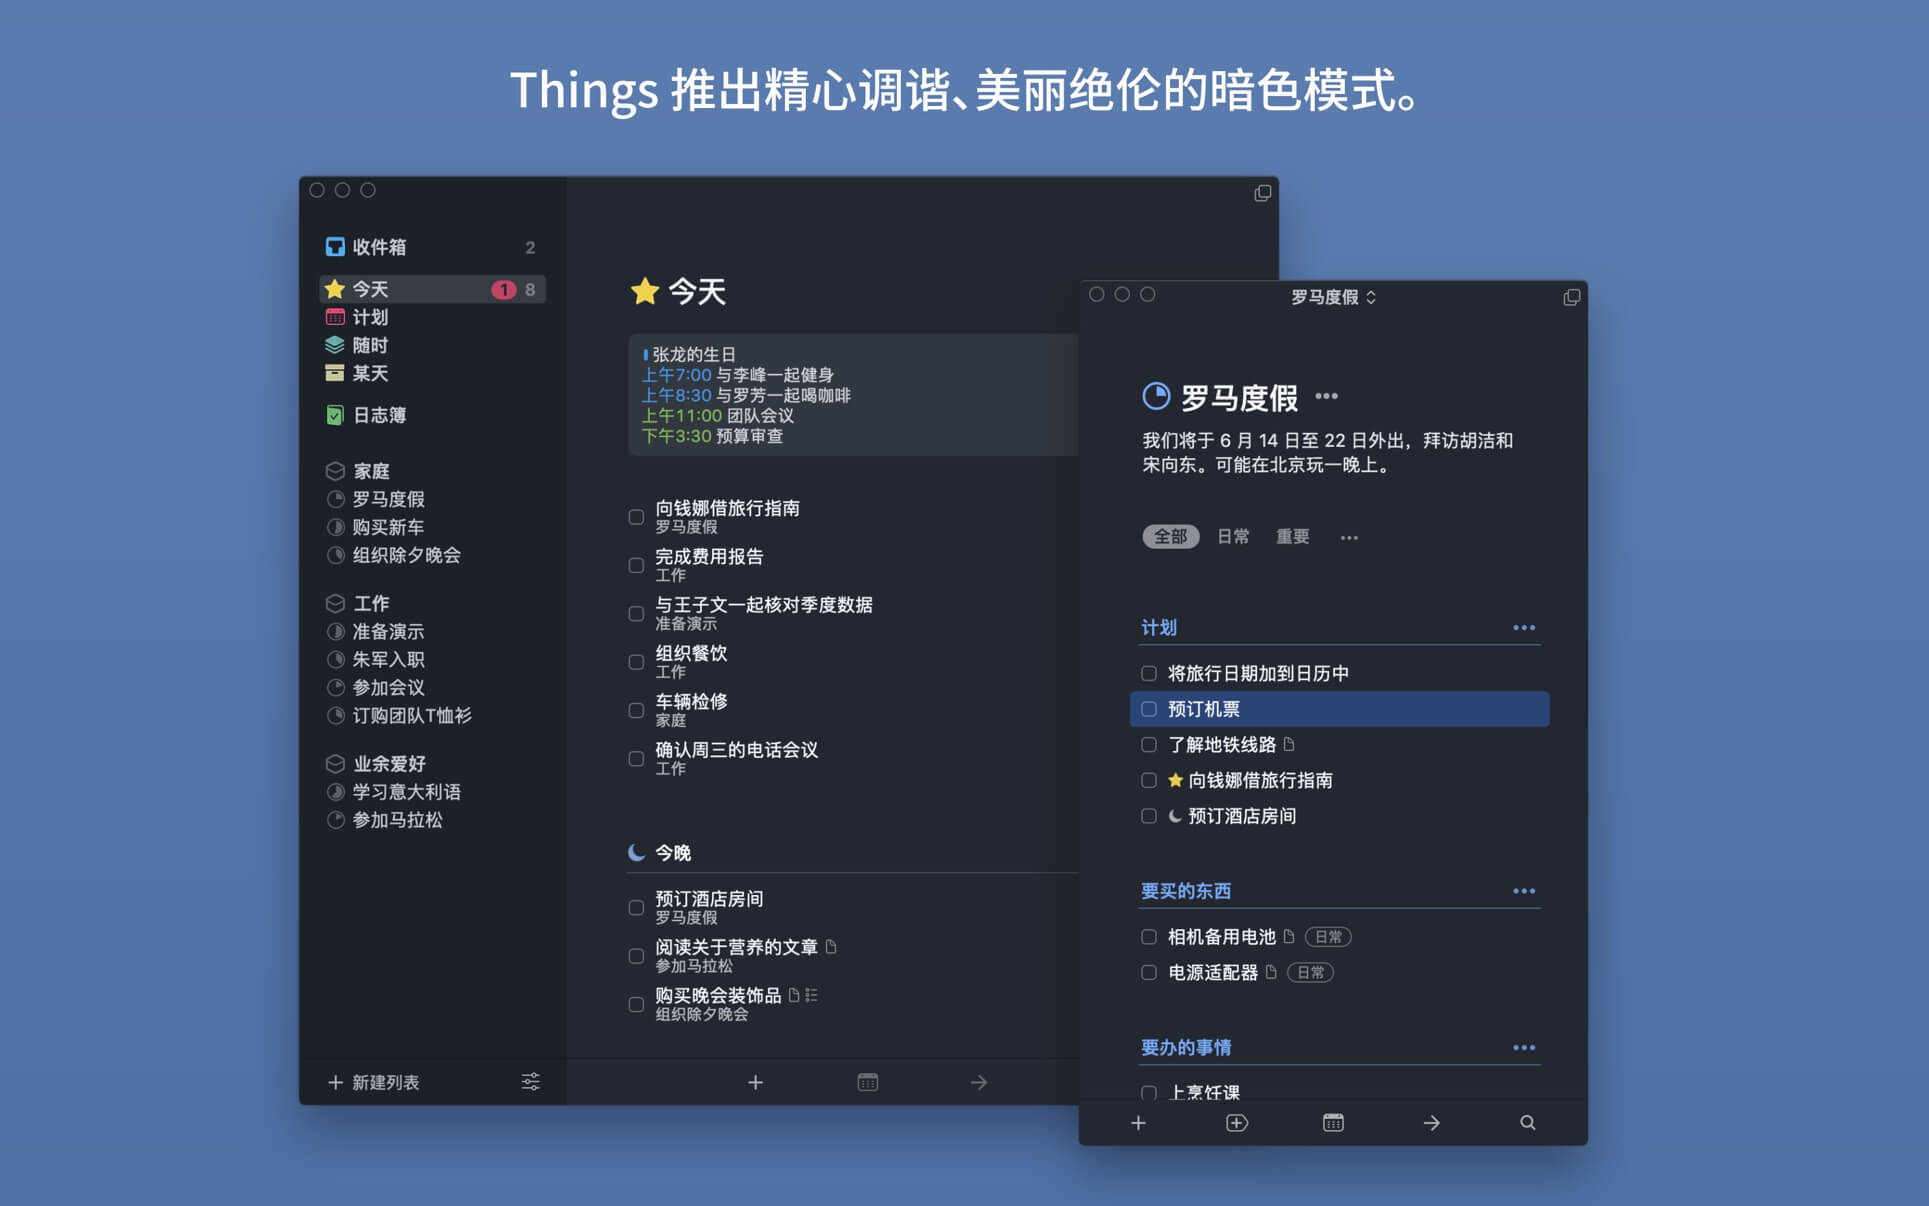 Things 3.15.21中文版